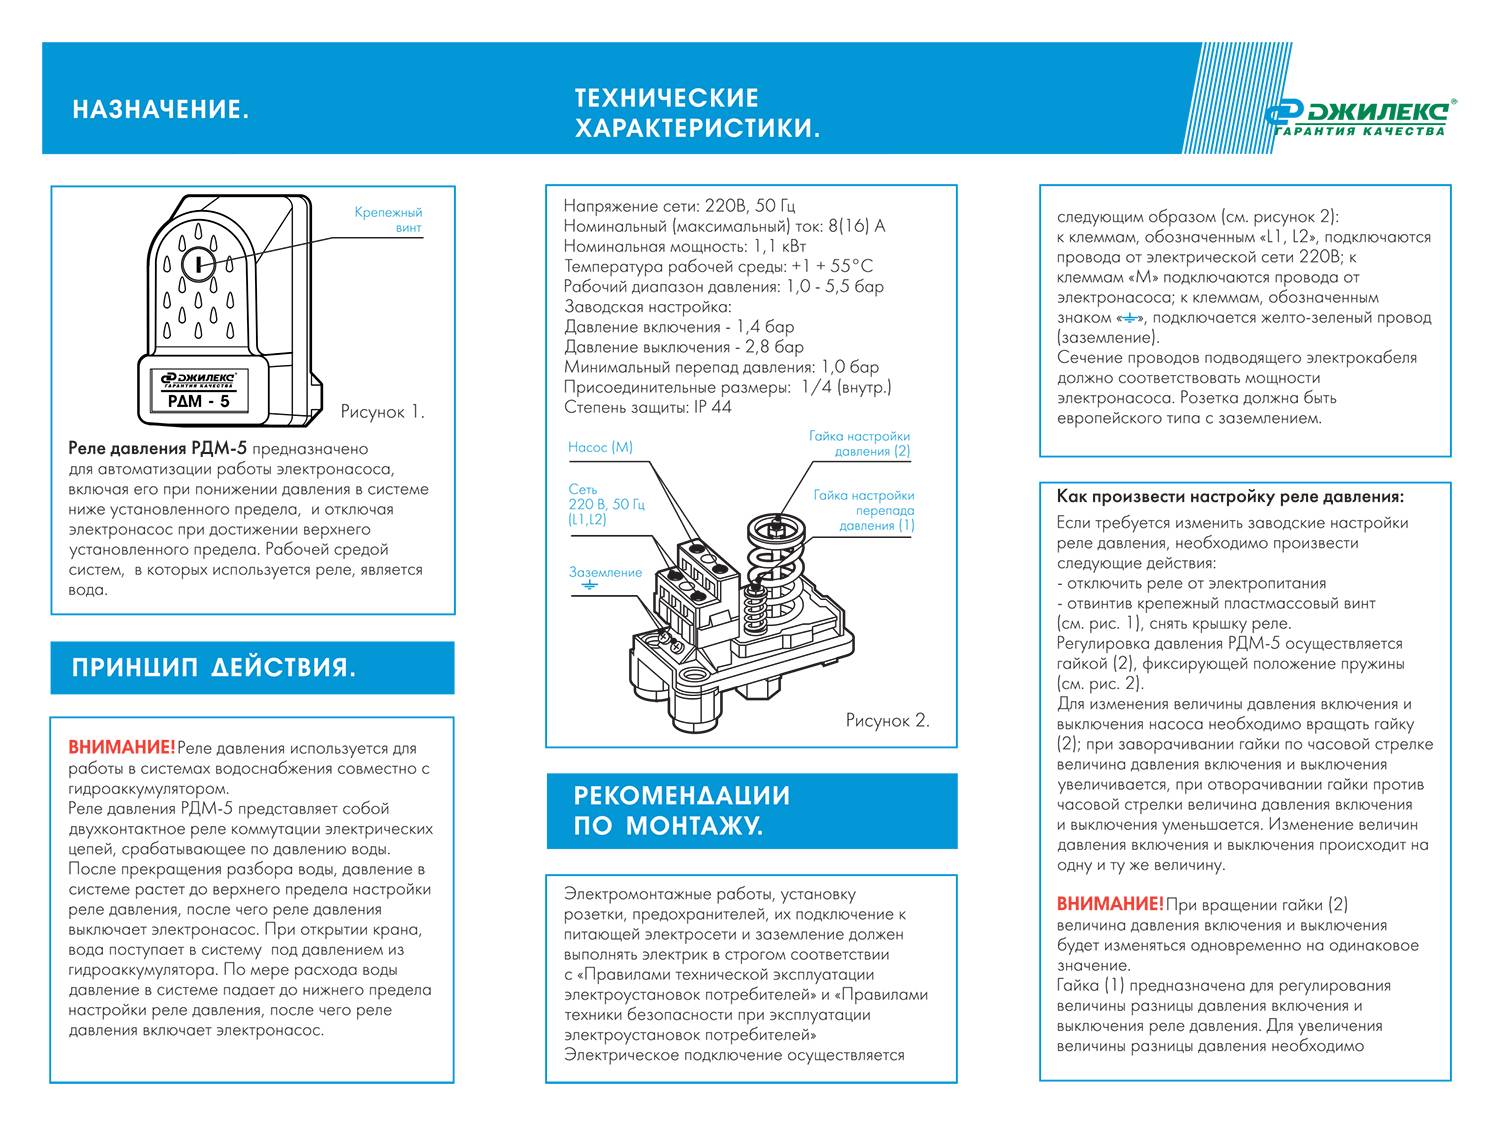 Настройка реле давления для гидроаккумулятора: правила и этапы работ